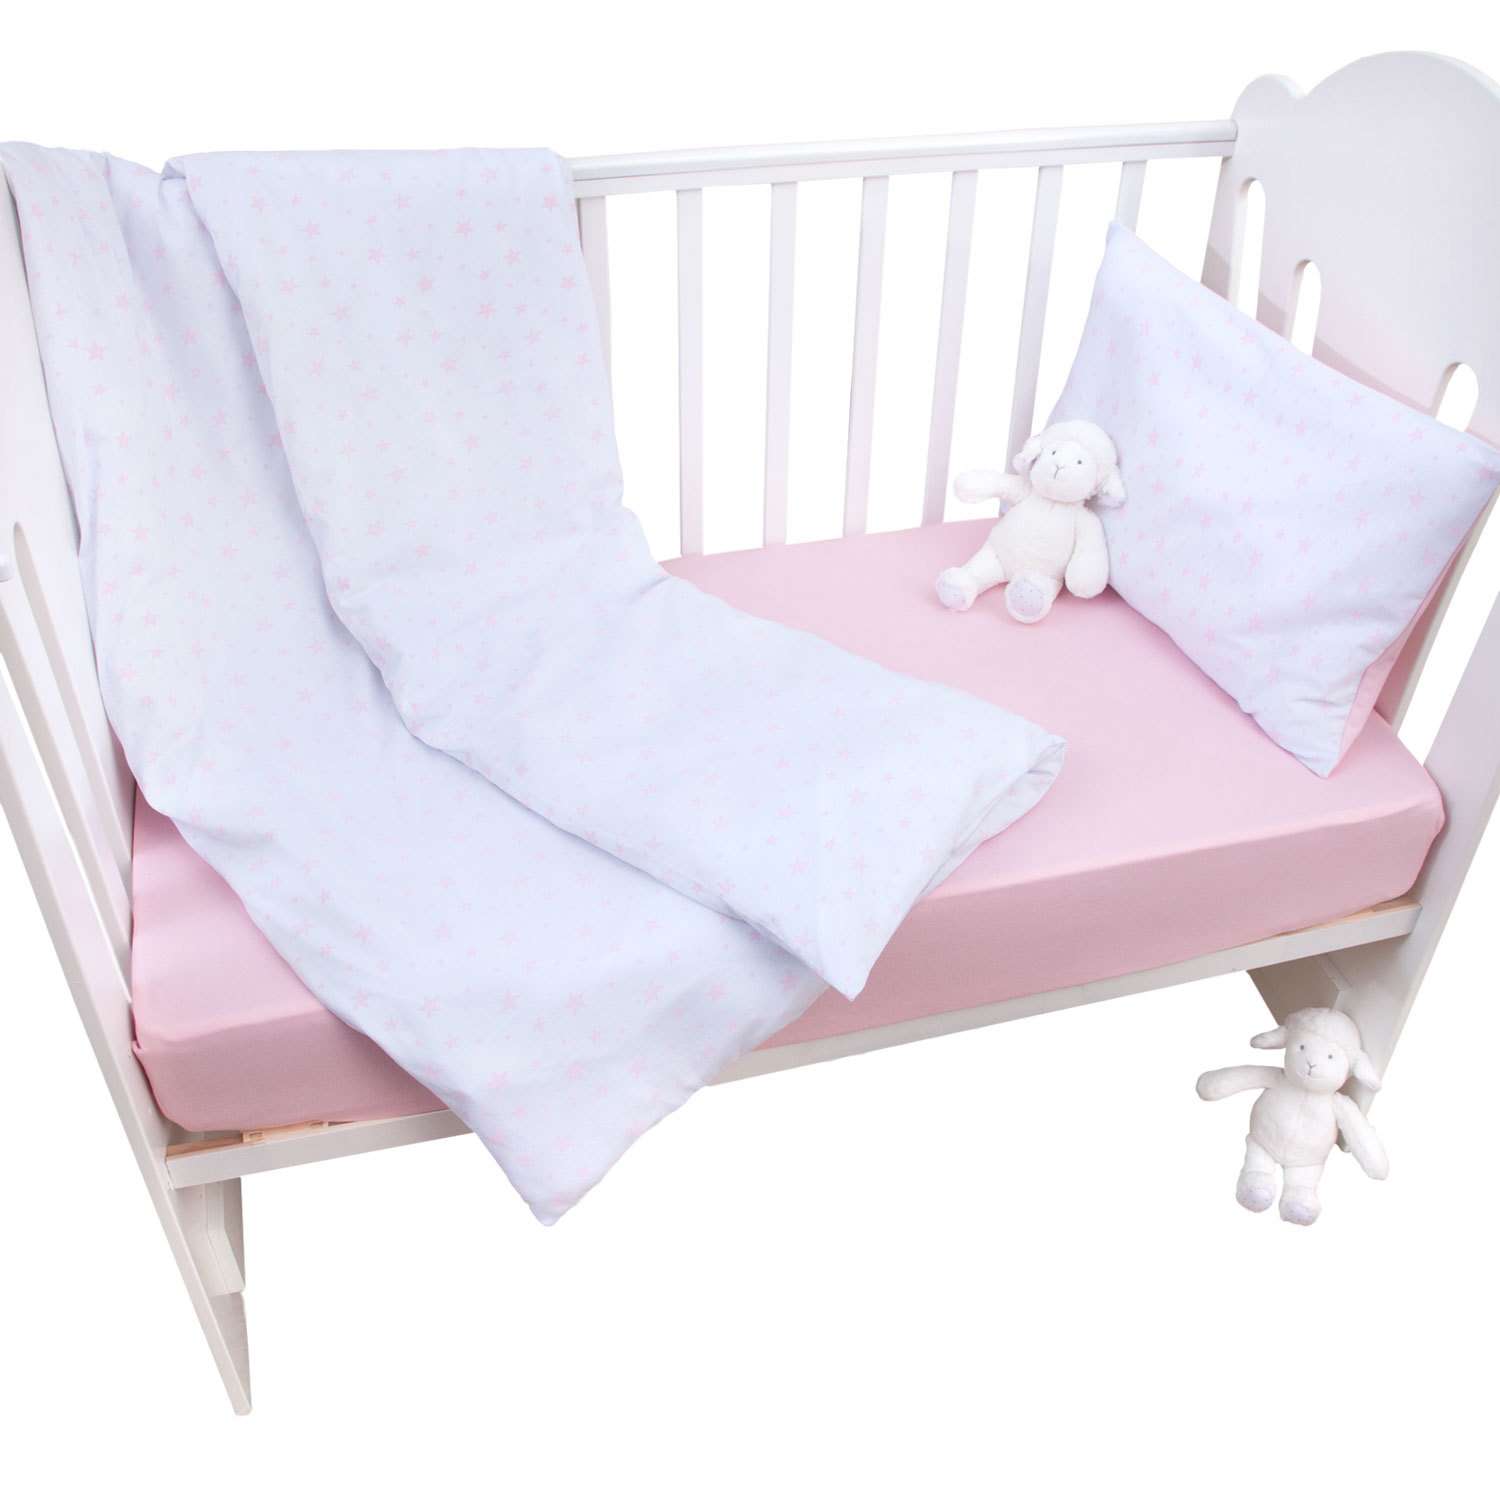 Комплект постельного белья MIRAROSSI Ninna Nanna Stellina Mio 3предмета Pink - фото 4